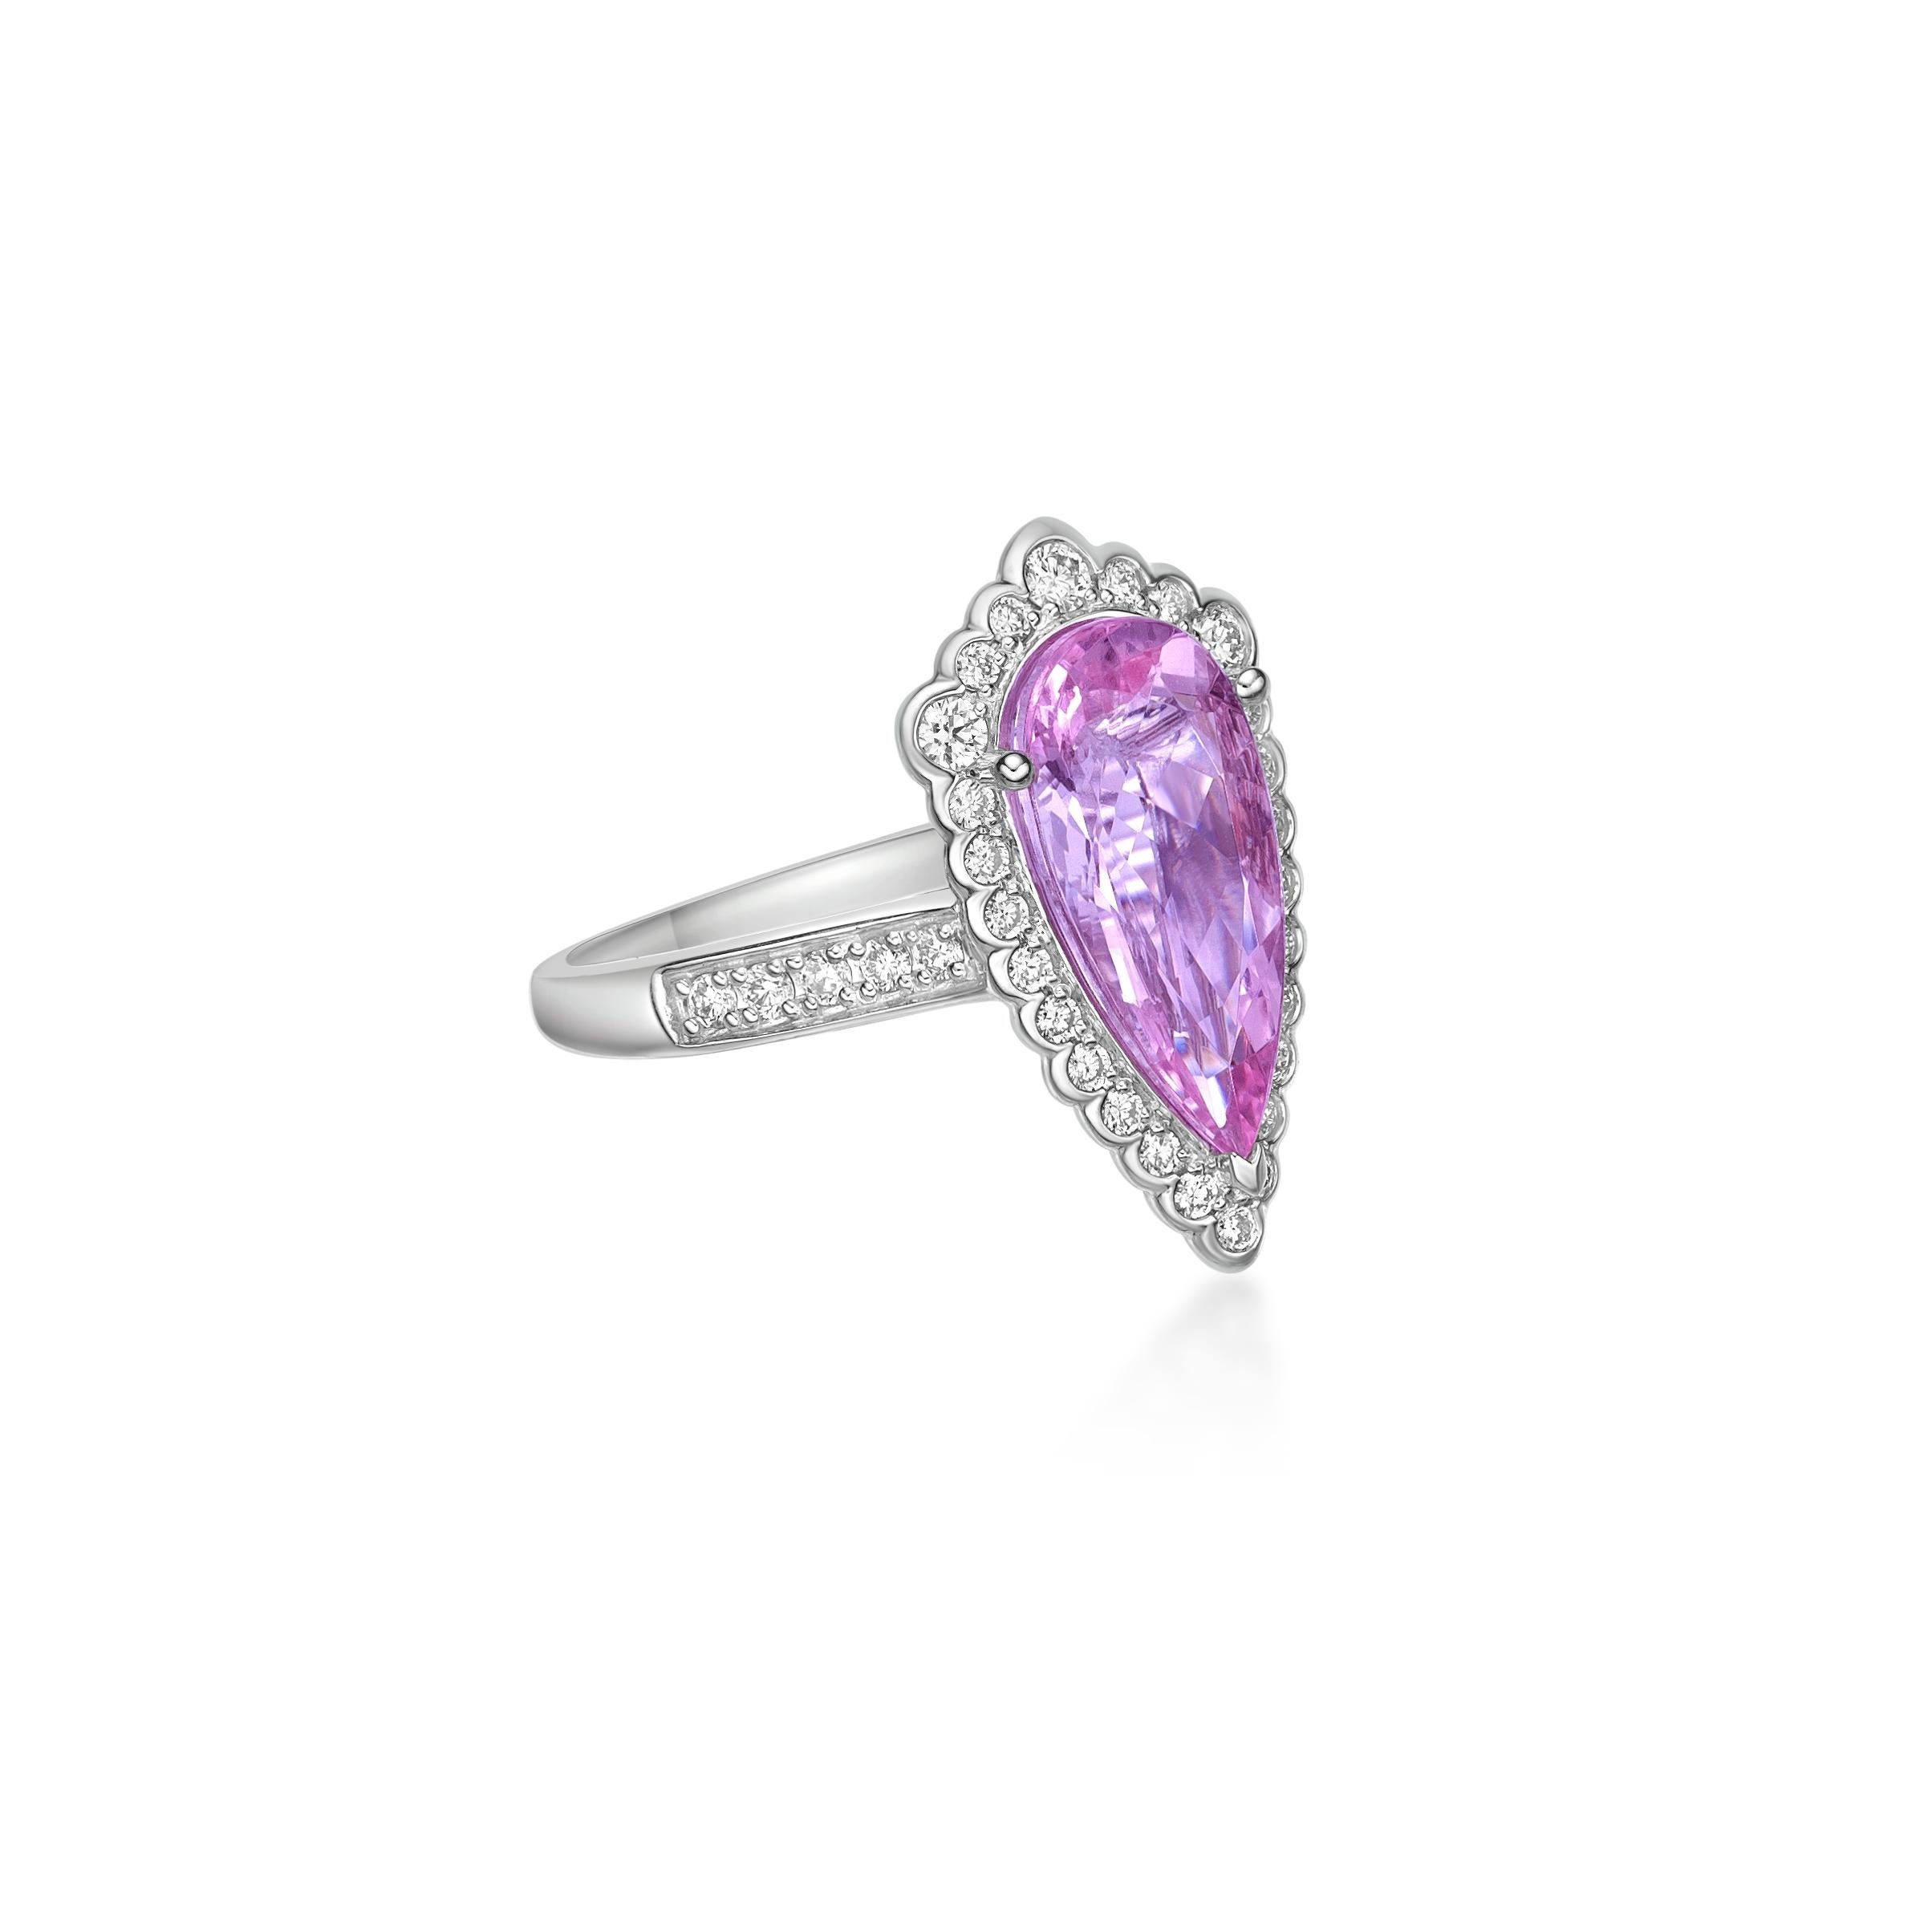 Präsentiert Ein atemberaubender rosa Morganit-Ring für diejenigen, die Qualität schätzen und ihn zu jeder Veranstaltung oder Feier tragen möchten. Der Ring aus Weißgold mit rosa Morganit und weißen Diamanten ist ein klassischer und zugleich